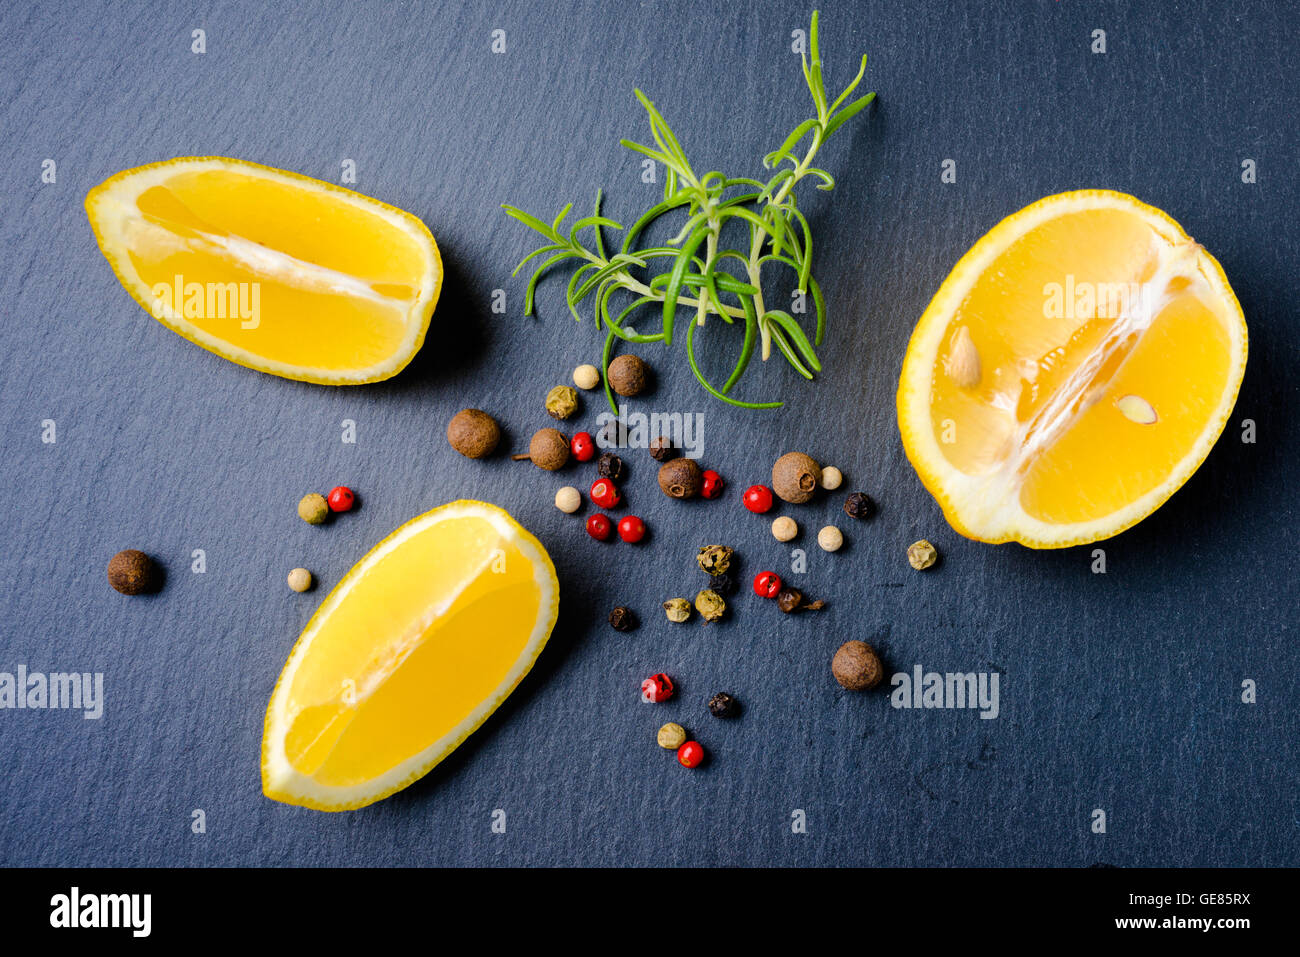 Vue de dessus, de romarin et de citron frais divers poivrons sur fond ardoise, Close up Banque D'Images